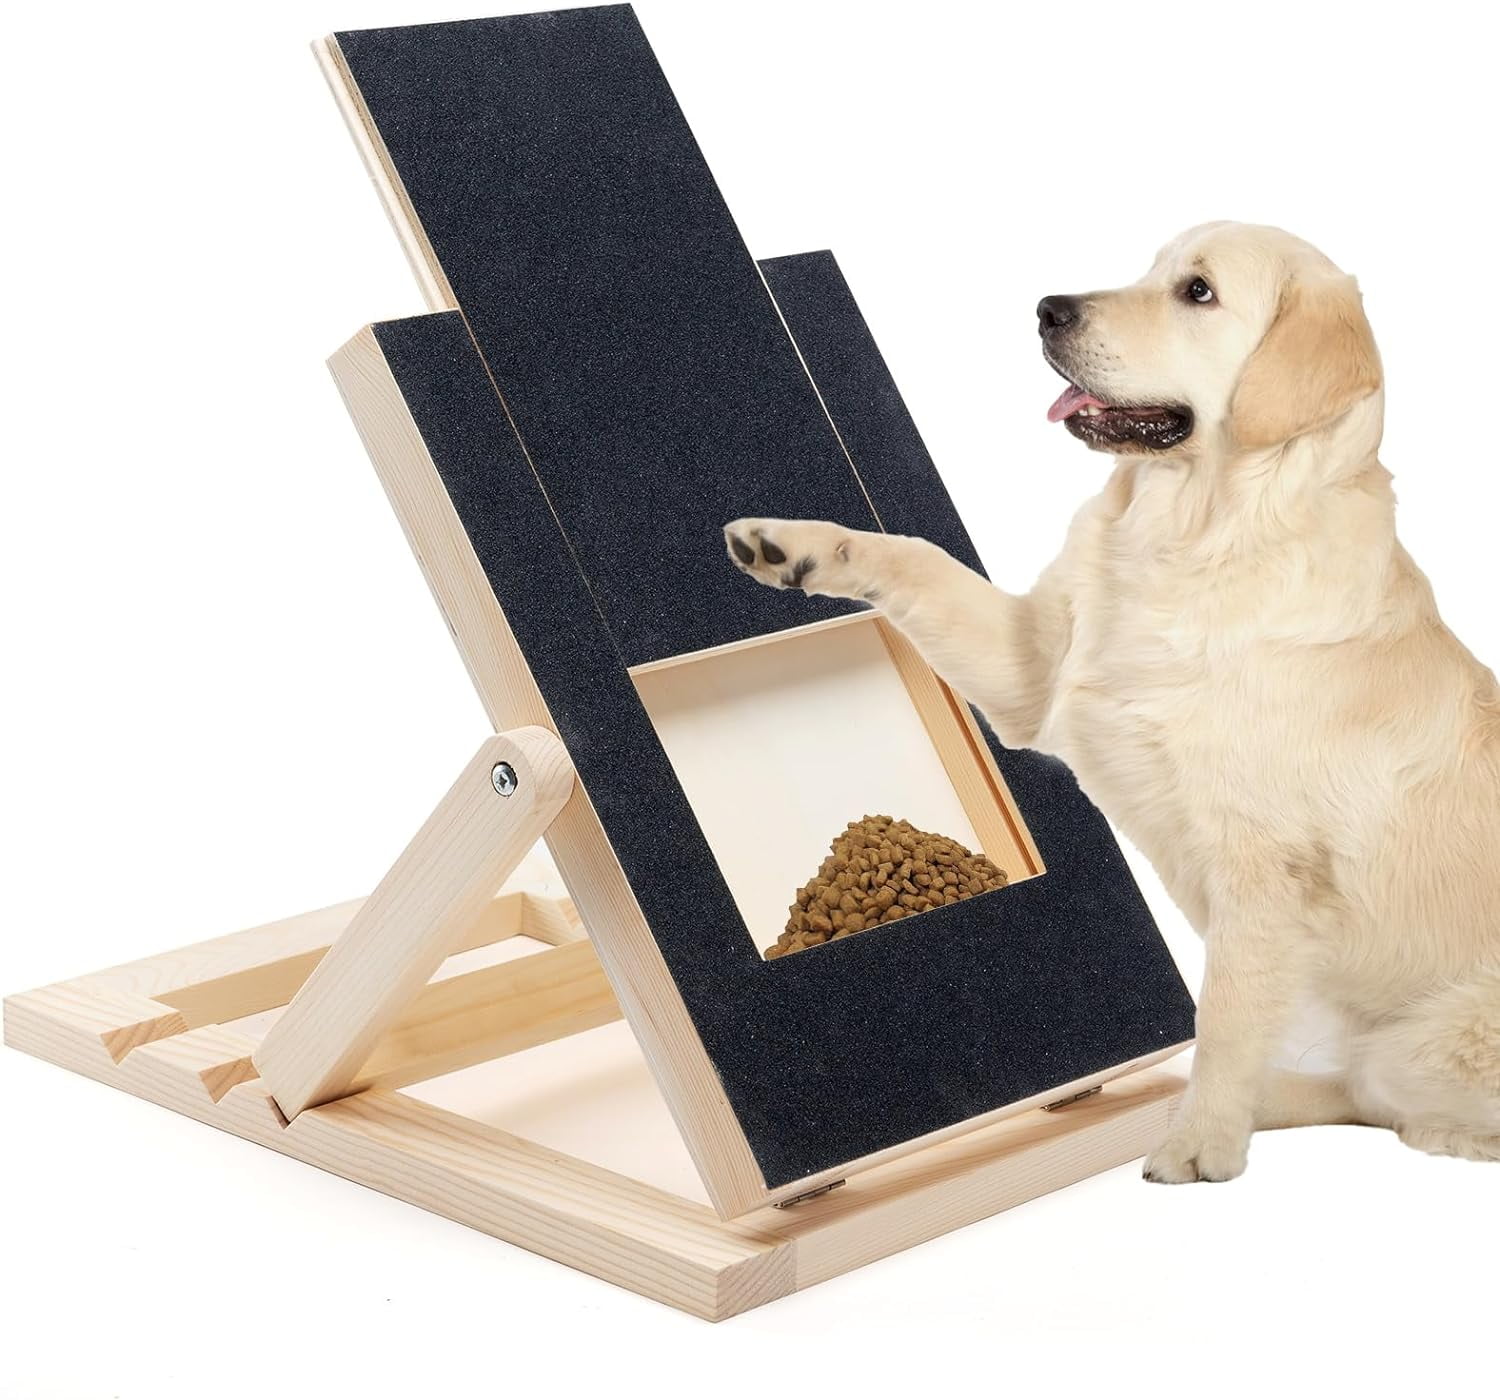 Dog Scratch Pad Nails Nail Board Small Medium Dogs Puppies Sandpaper File Treat Box Puppy Trimmer Stress Free Sensitive 71b9a62a b203 492d a2f3 4f1fa1b8a1a4.9488531f4df6b193ed944874c1f0af86